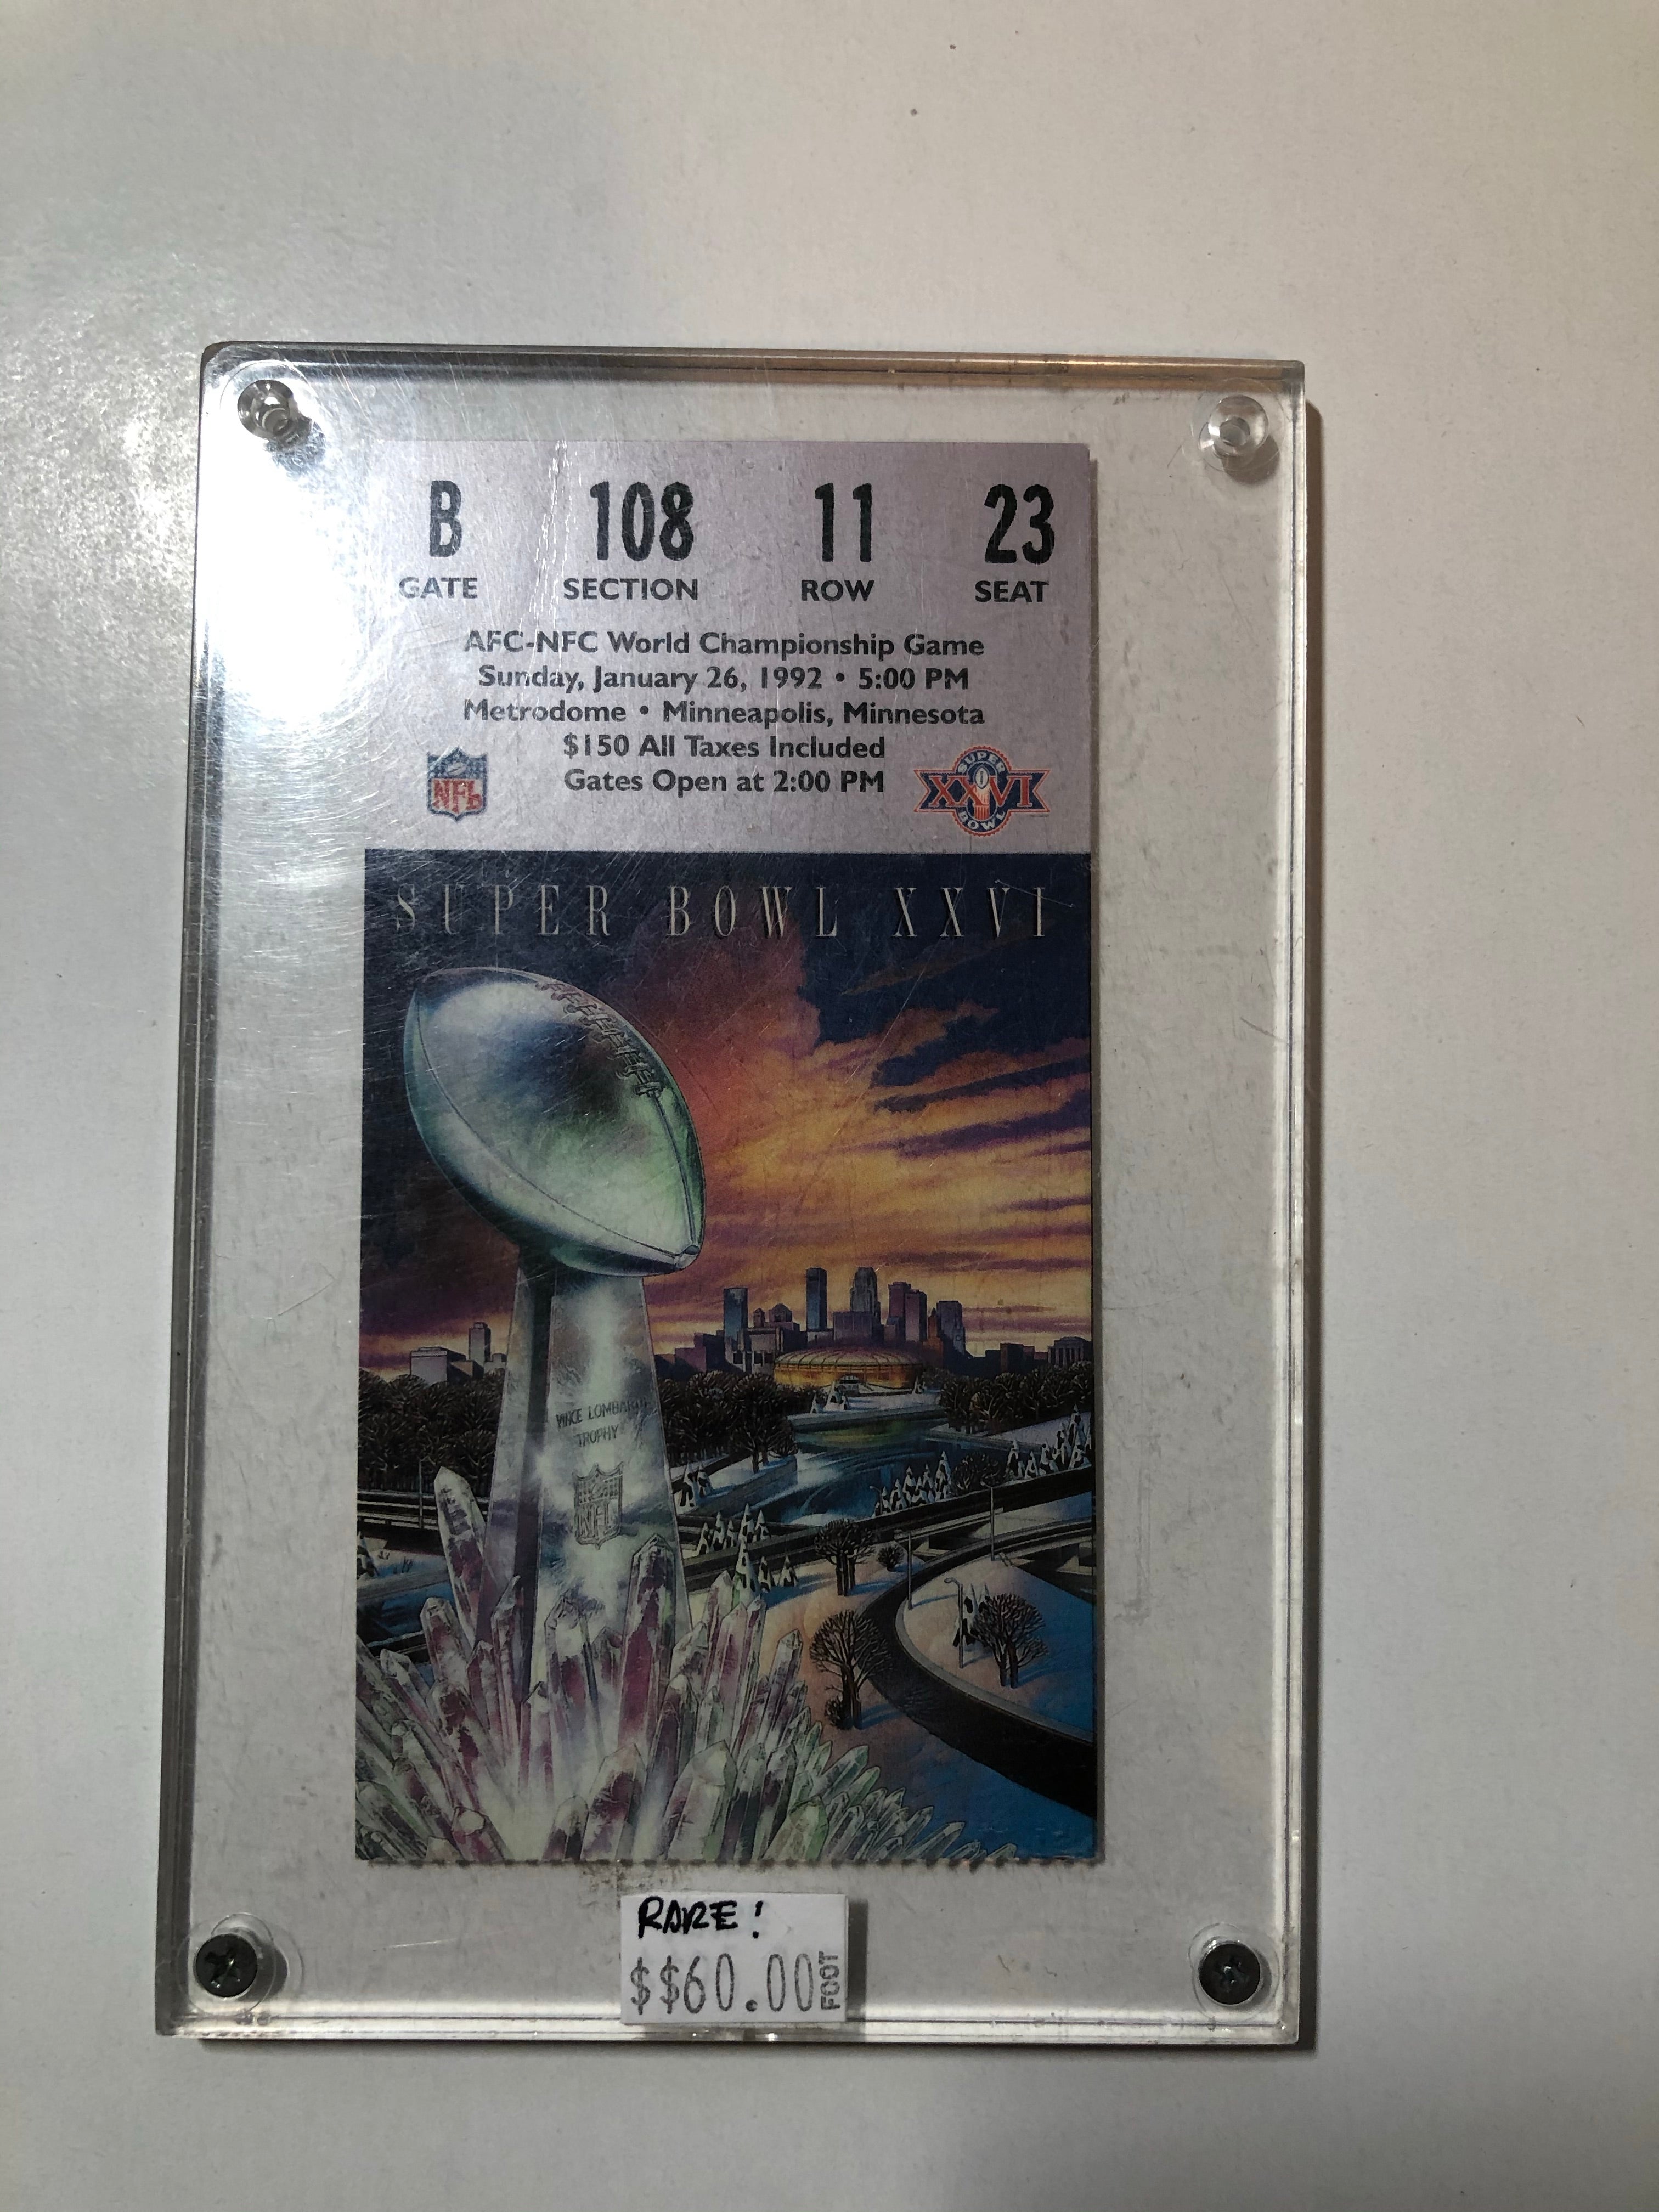 Super Bowl XXV1 original football game ticket 1992